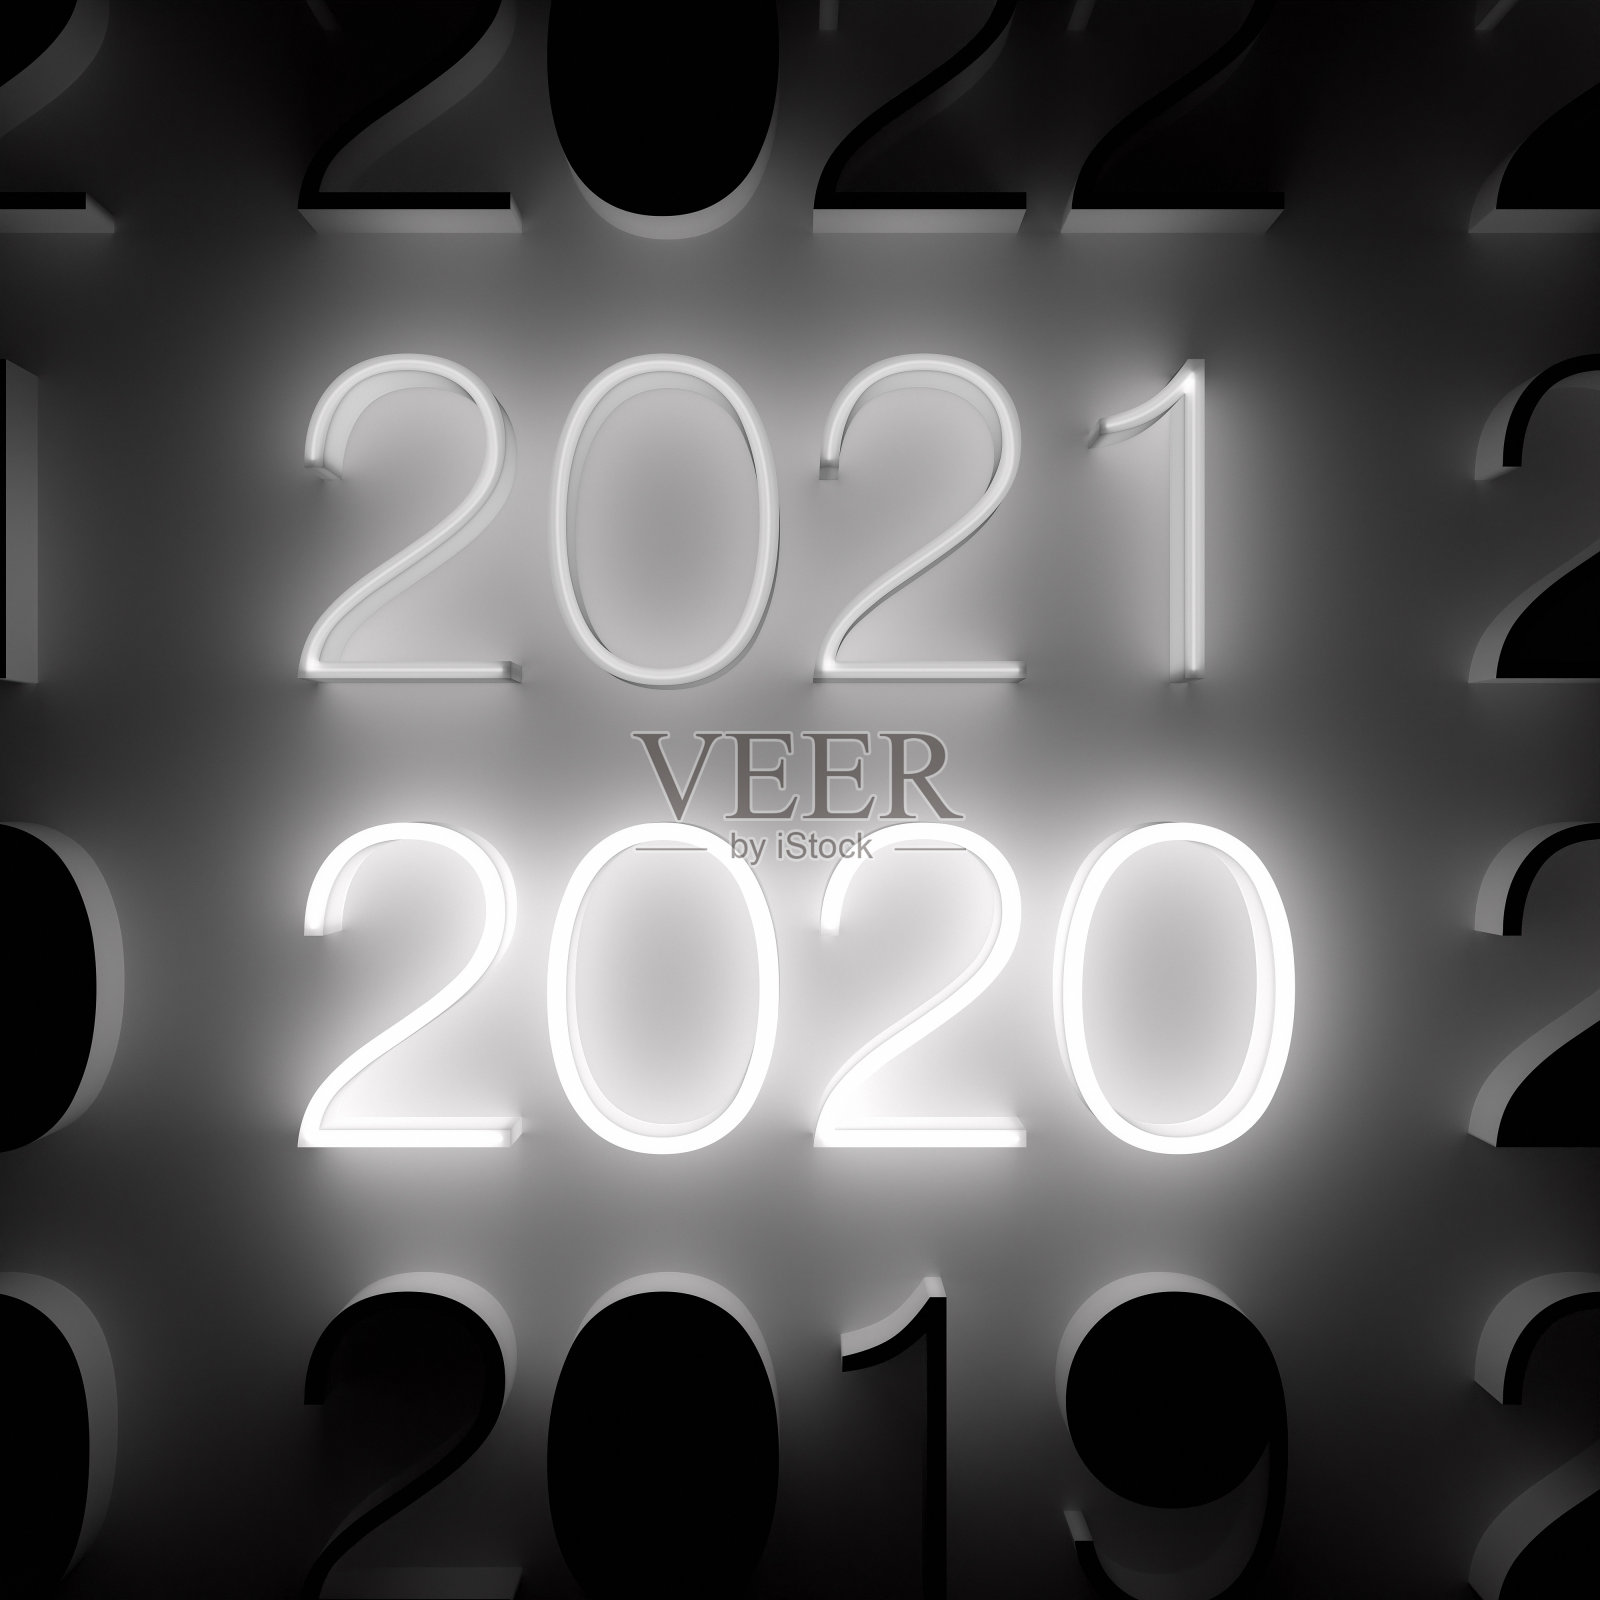 发光的2021年和2020年的数字在墙上。新年的概念照片摄影图片